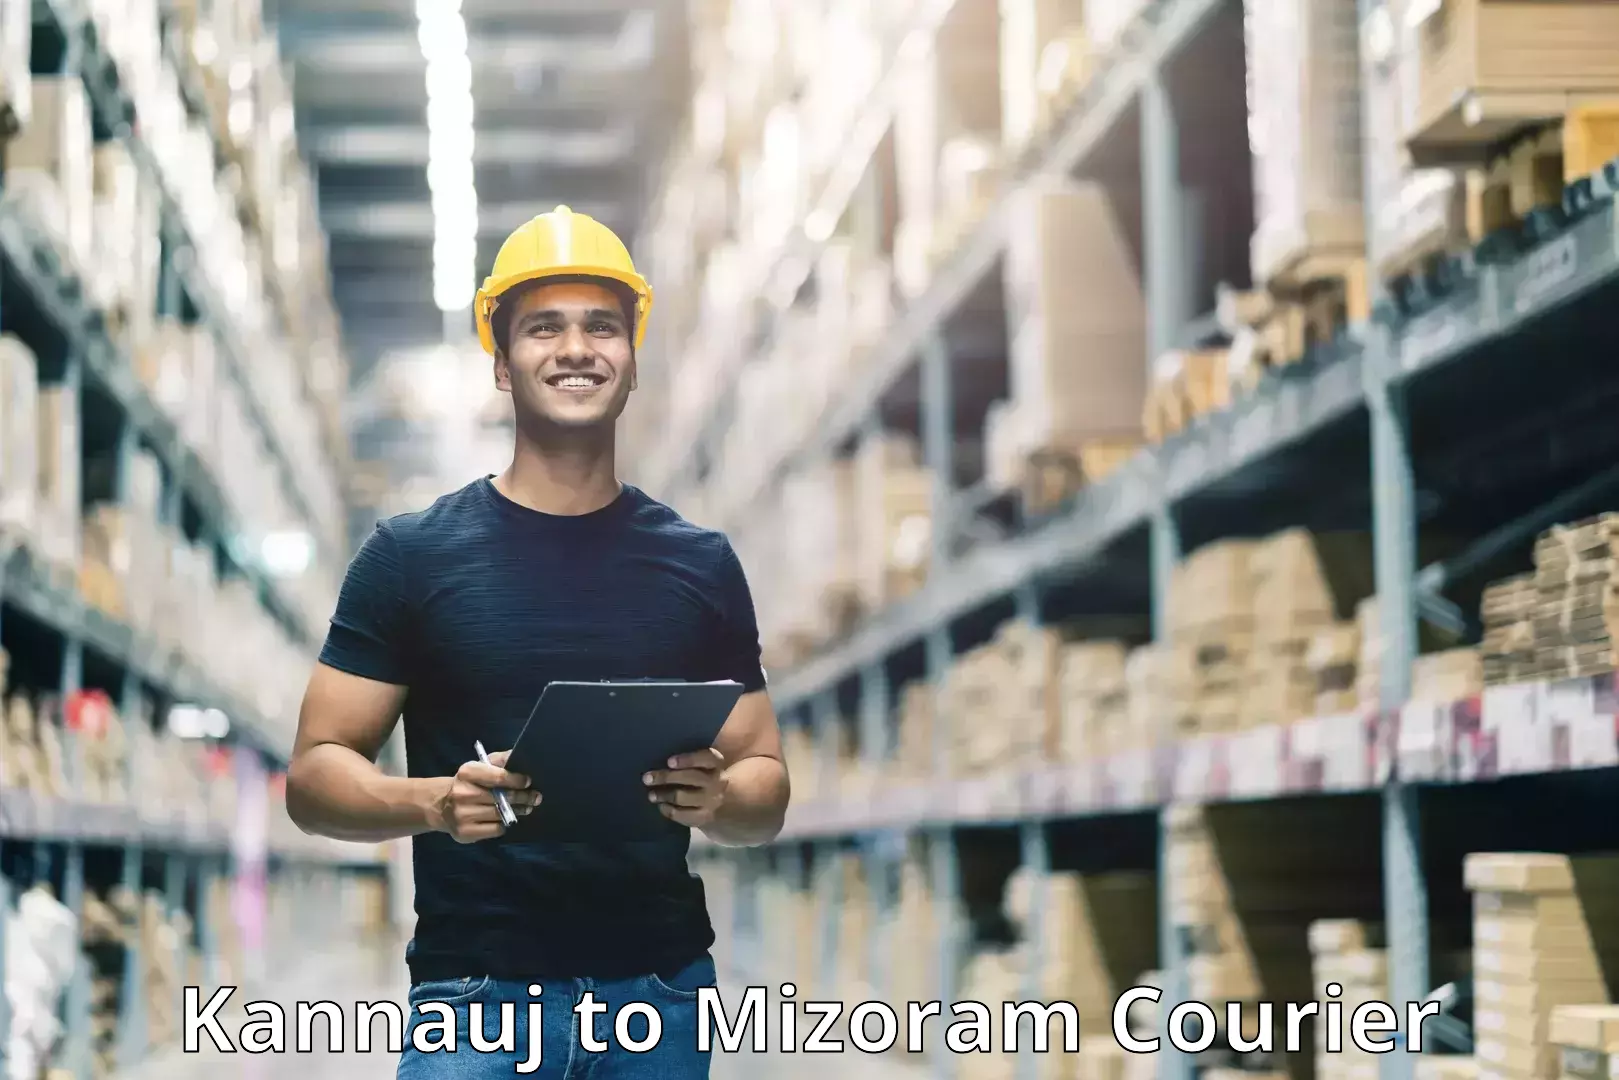 Customer-focused courier Kannauj to Mizoram